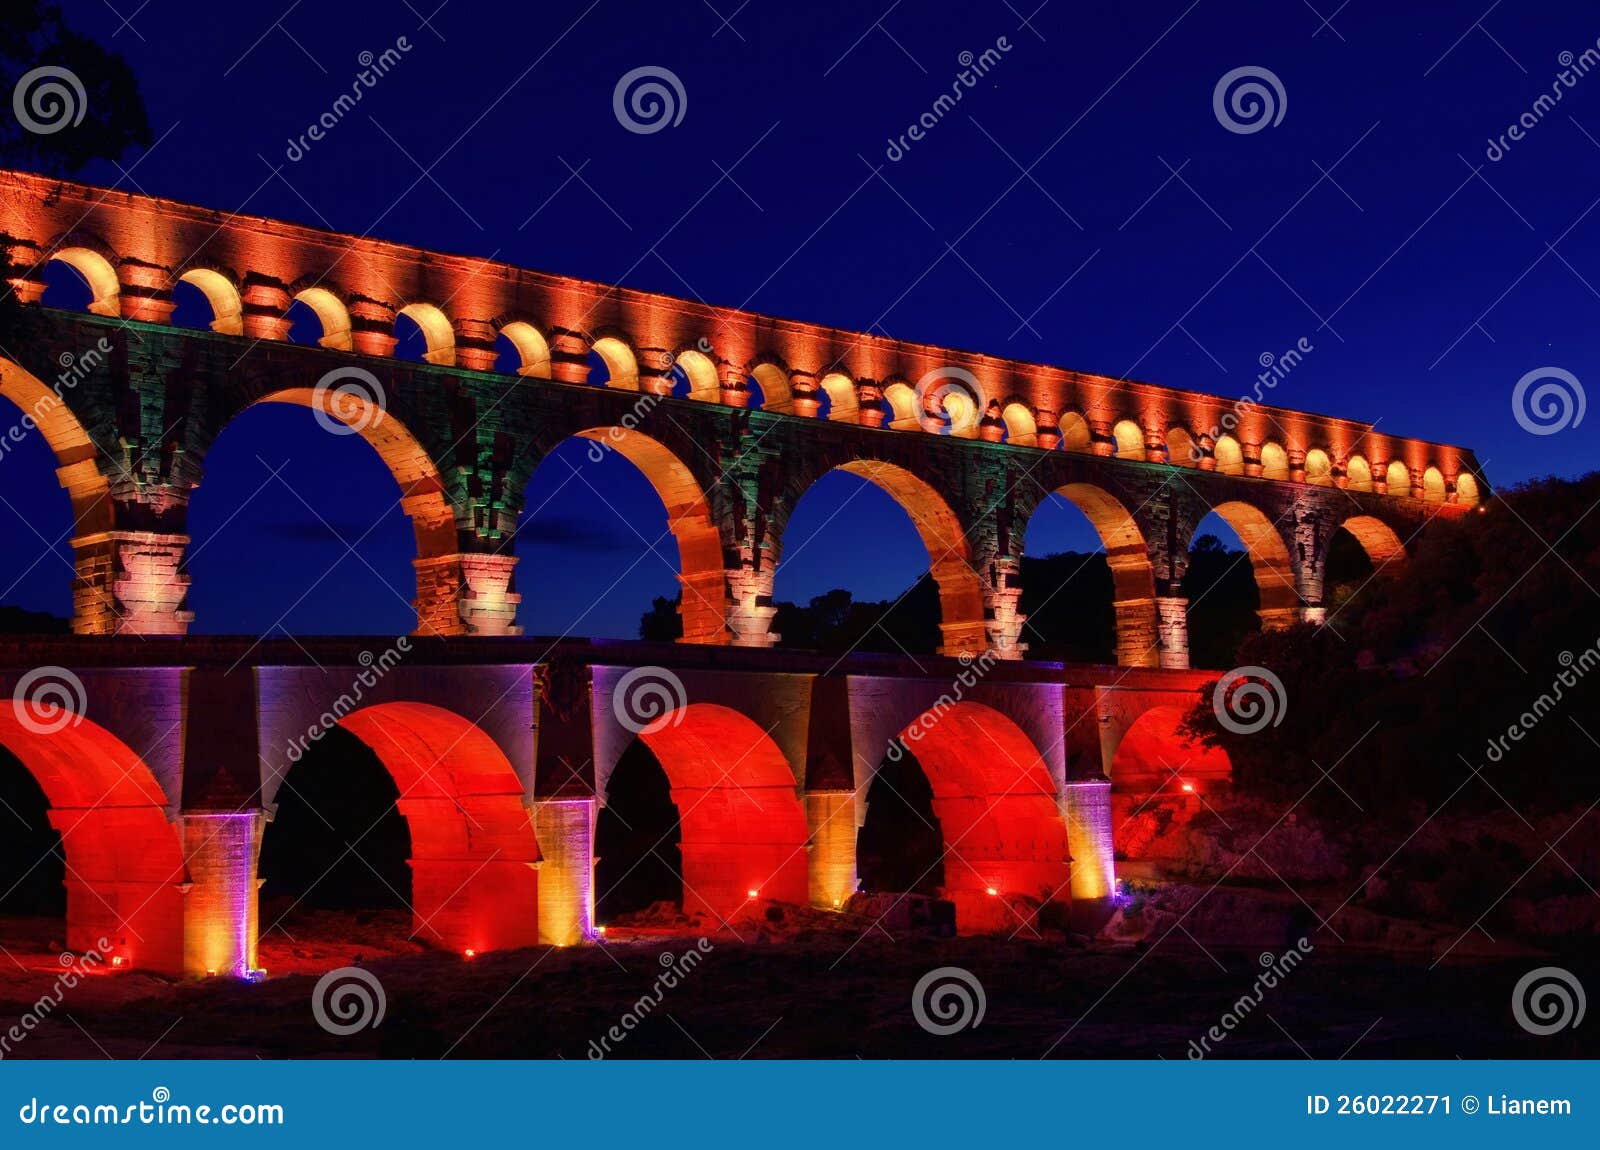 pont du gard night